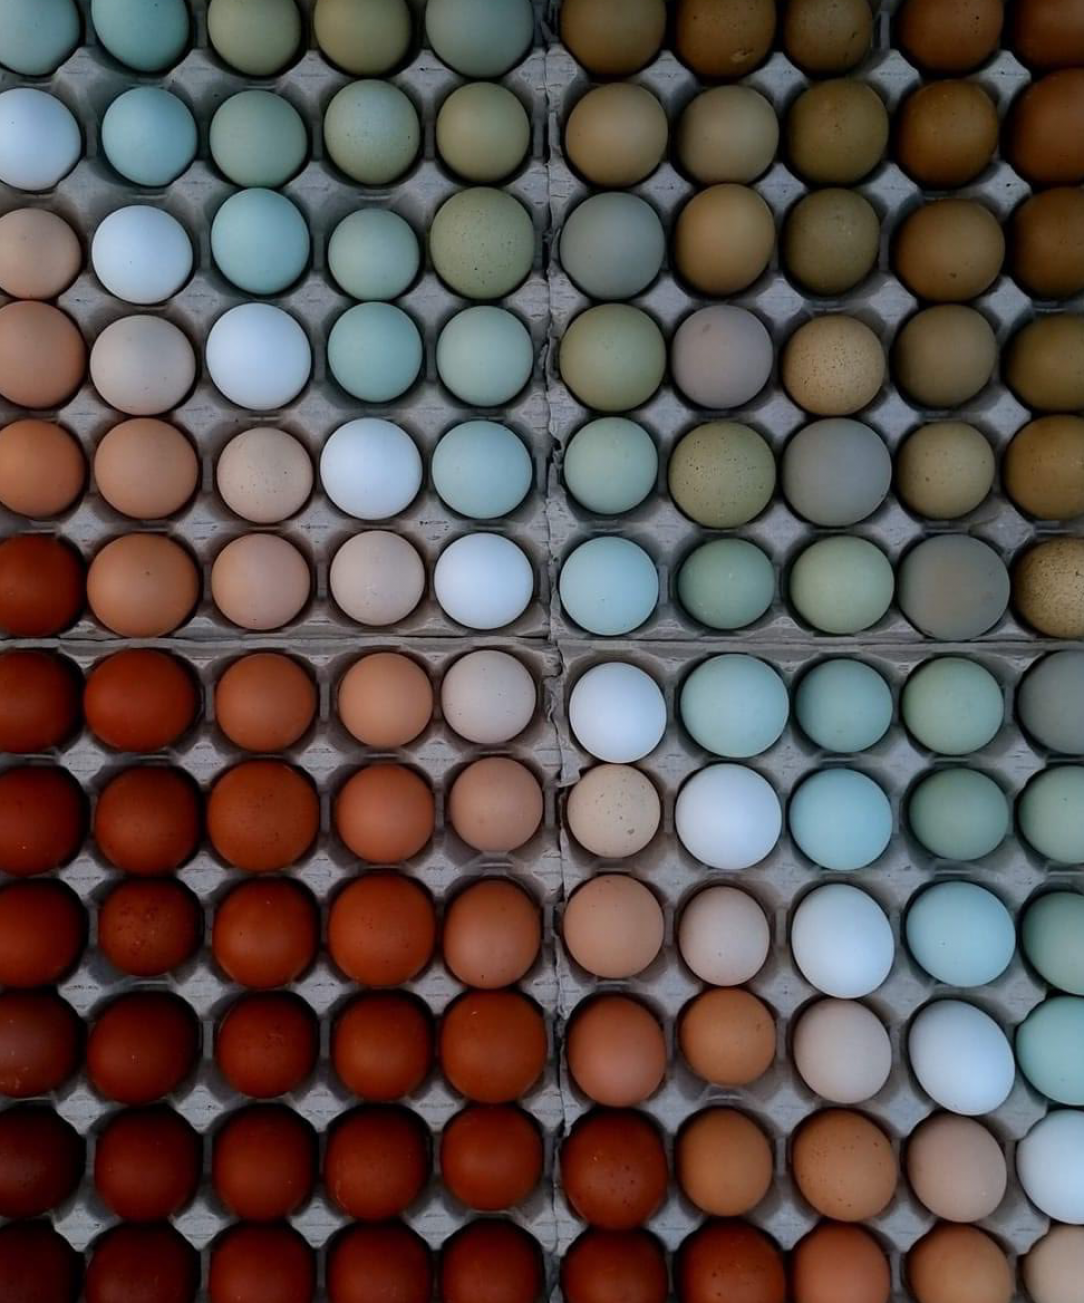 Farm fresh eggs organized by color